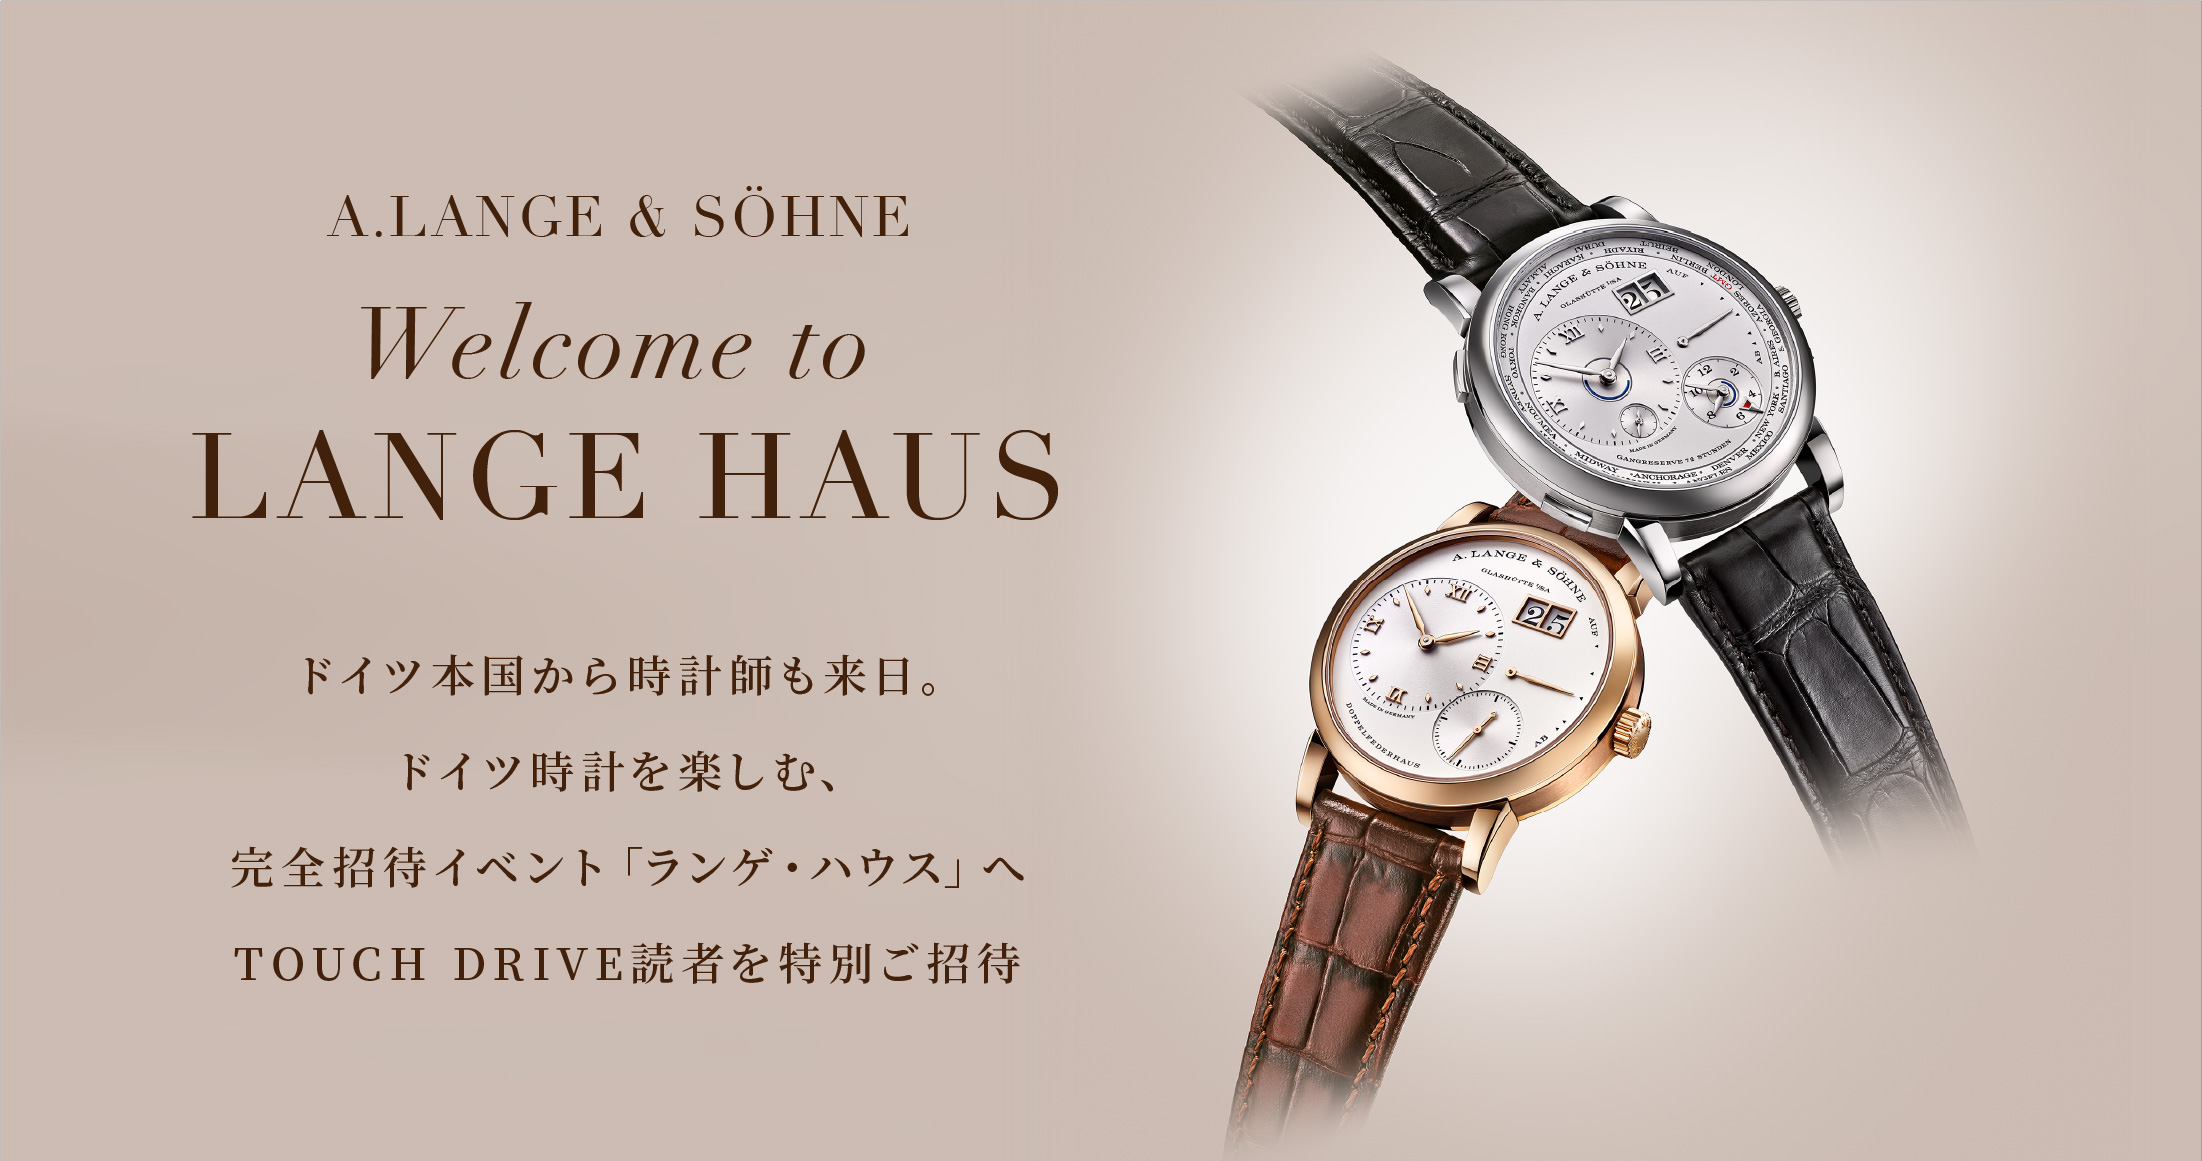 A.LANGE & SÖHNE Welcome to LANGE HAUS ドイツ本国から時計師も来日。ドイツ時計を楽しむ、完全招待イベント「ランゲ・ハウス」へTOUCH DRIVE読者を特別ご招待